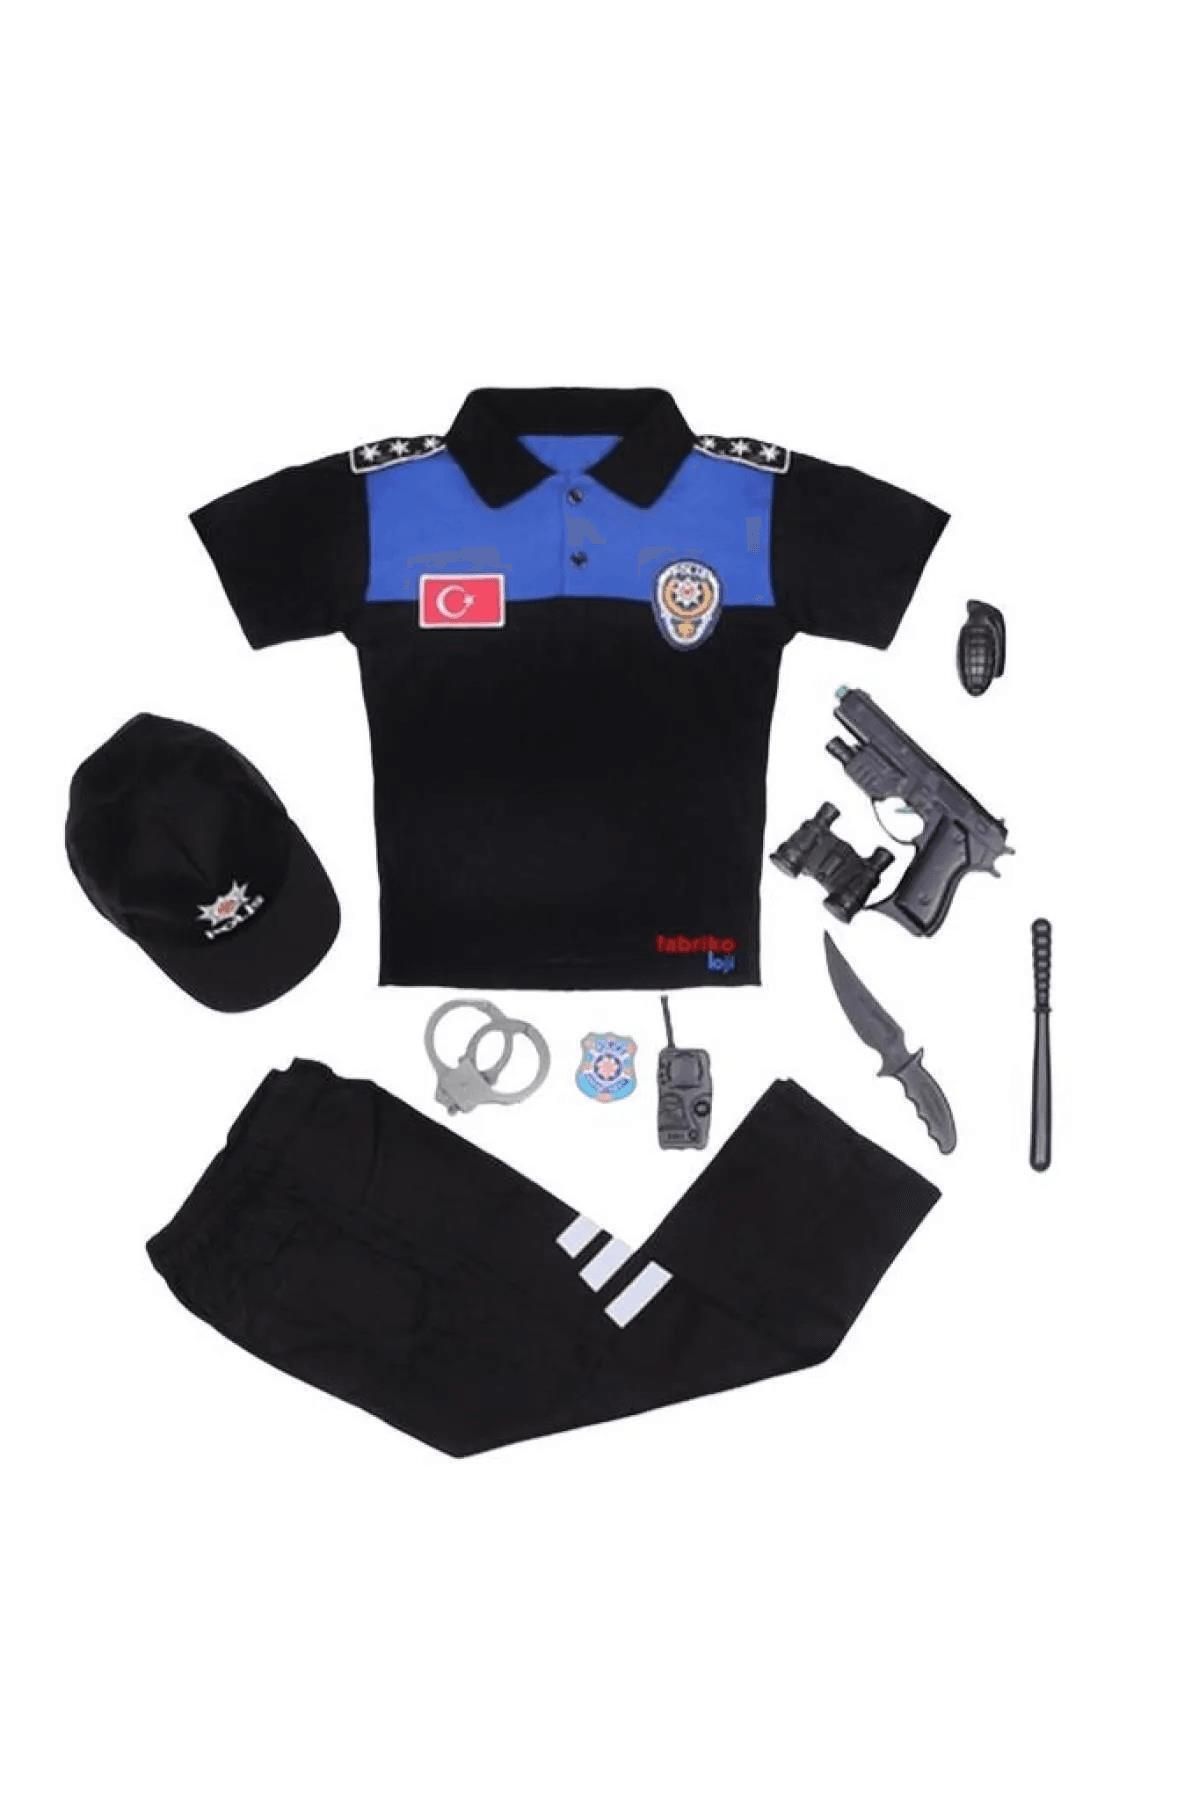 Mashotrend Tişört Polis Kostümü Alt Üst + Şapka + Oyuncak seti Çocuk Polis Kostümü - Çocuk Polis Kıyafeti